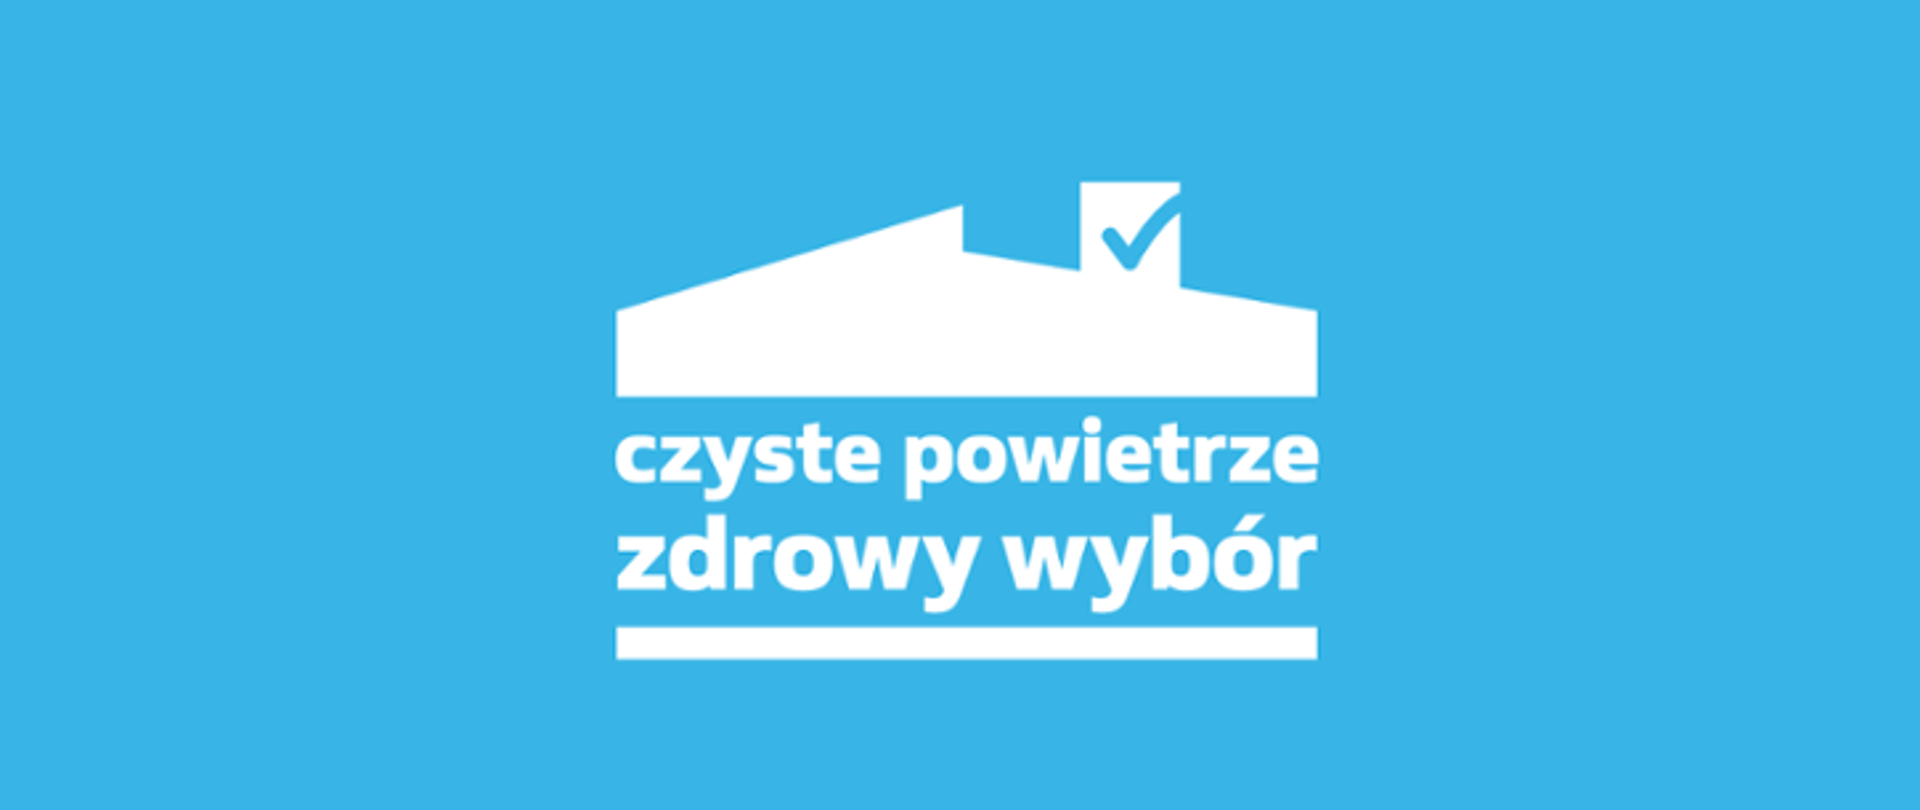 Logo programu "Czyste Powietrze" - biała grafika na błękitnym tle, zarys budynku z wyeksponowanym kominem i wpisanym weń hasłem "czyste powietrze zdrowy wybór".